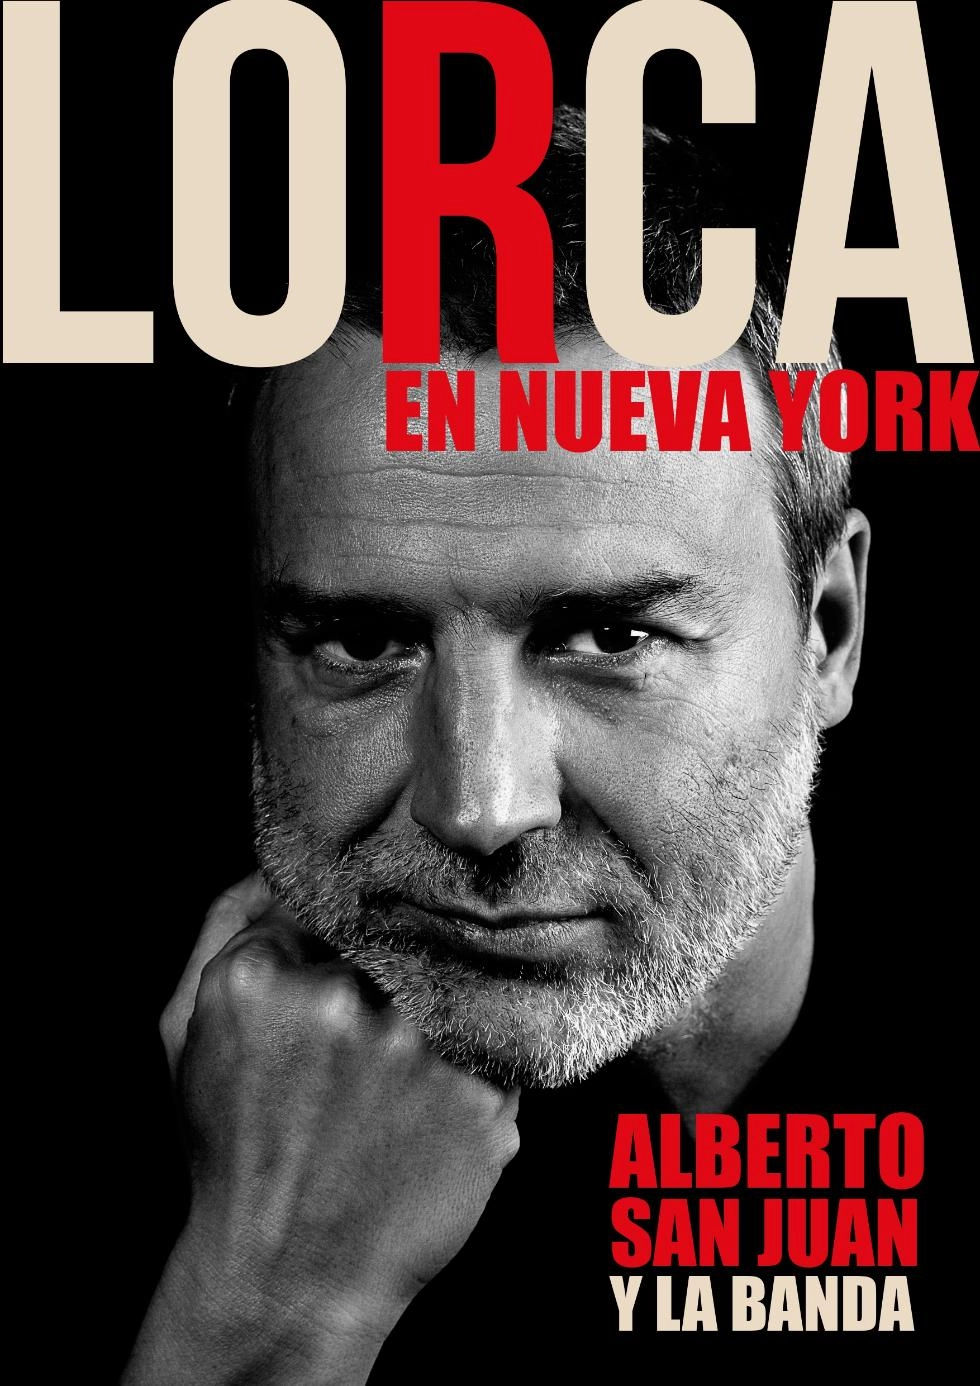 Imagen del artículo Cultura presenta 'Lorca en Nueva York' con Alberto San Juan y La Banda en Castelló y Peñíscola